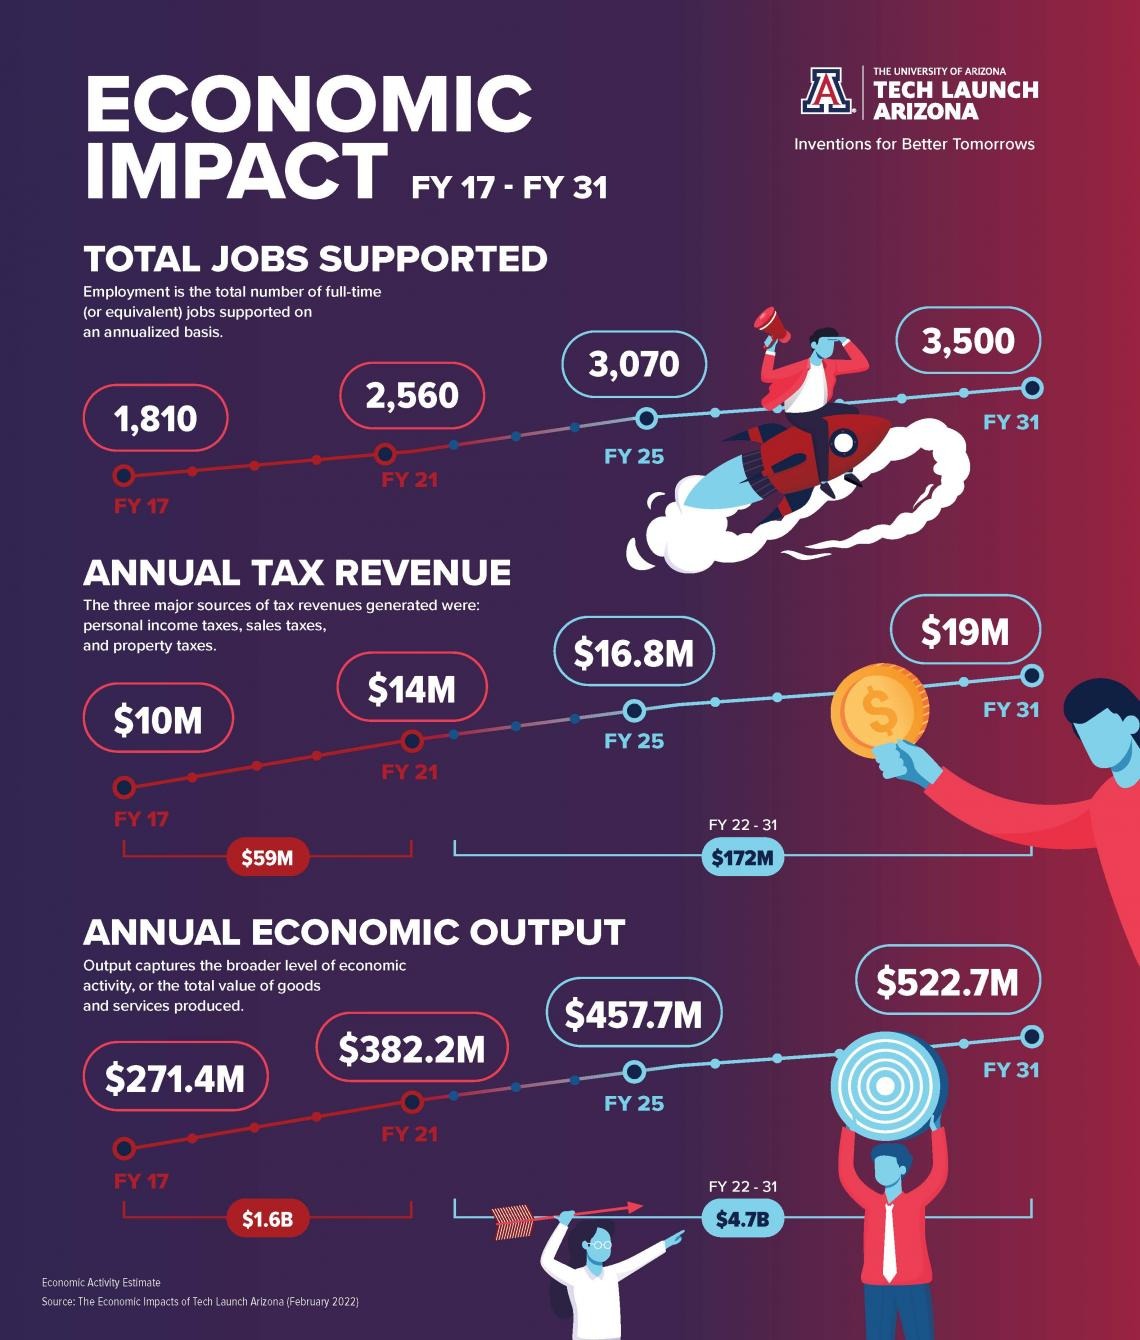 Economic Impact FY 17 - FY 31